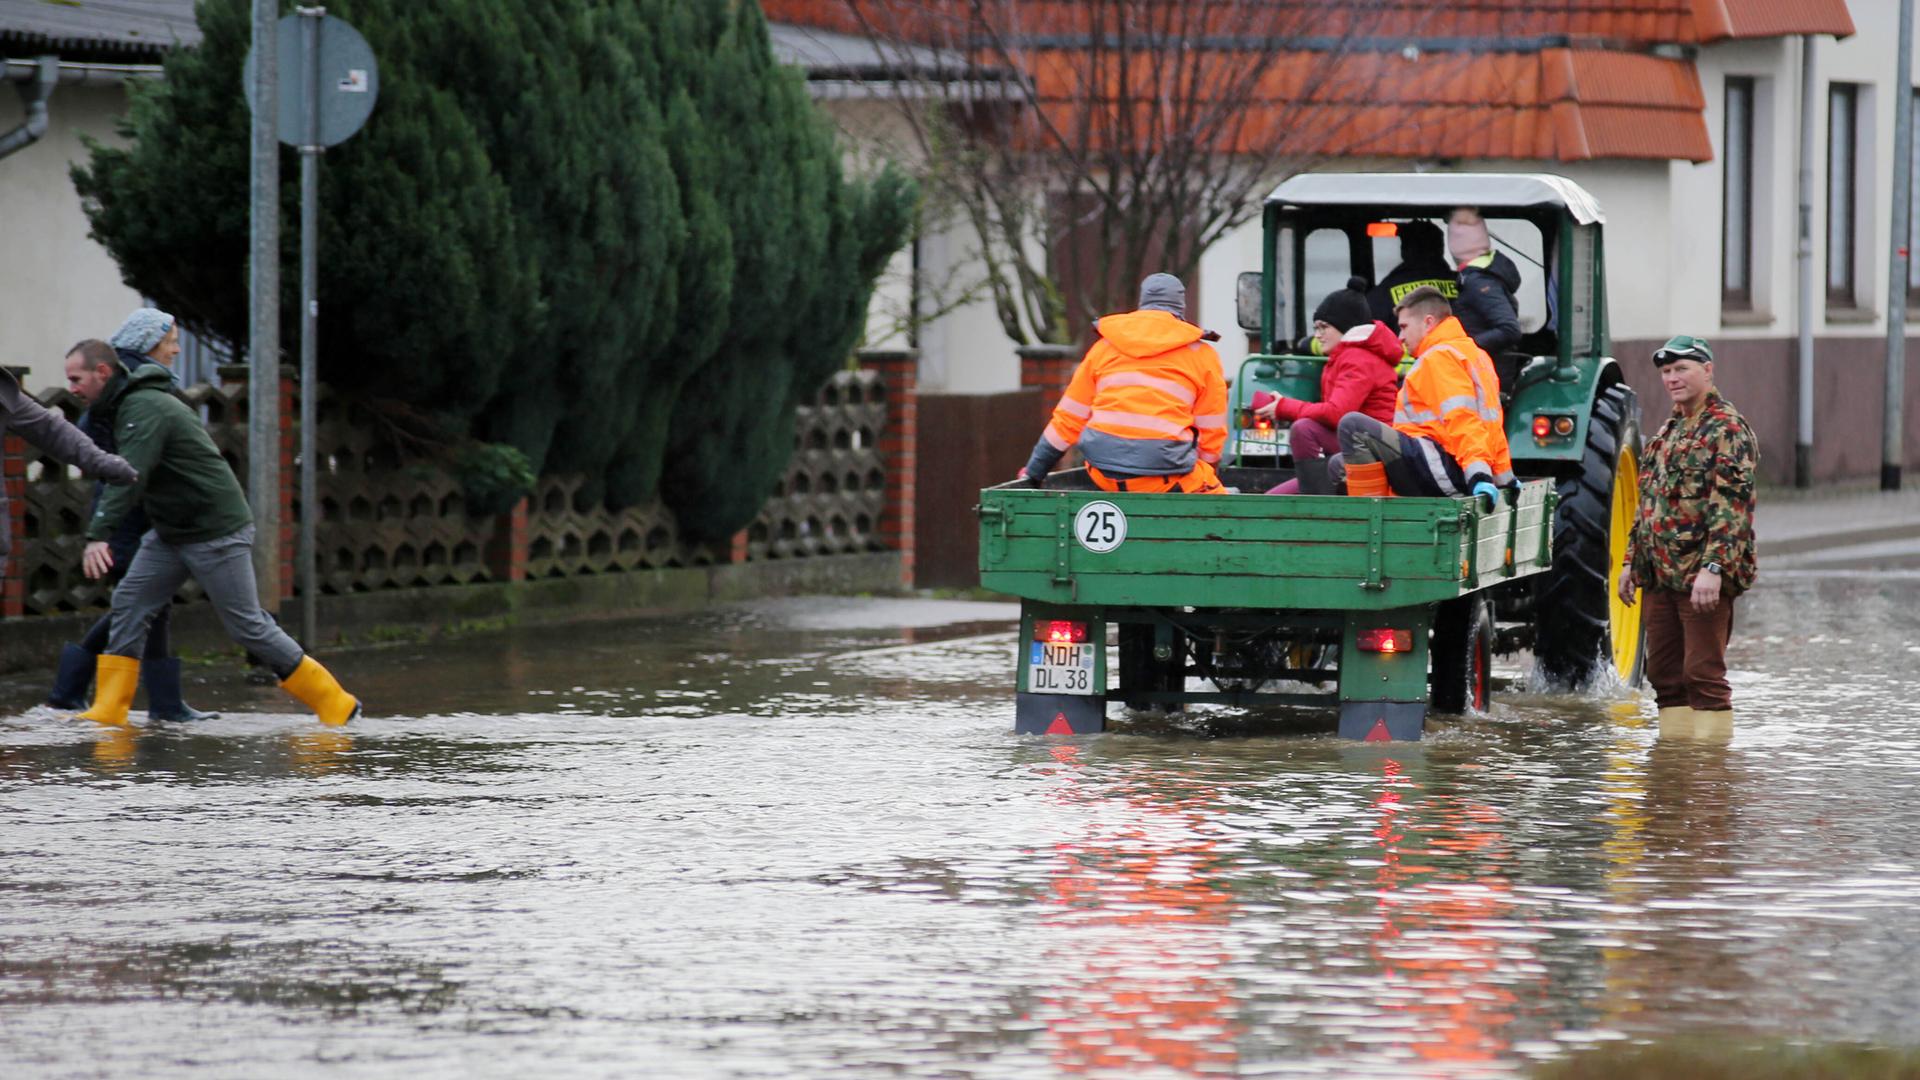 Ein Traktor mit Anhänger, auf dem Menschen sitzen, fährt durch eine überflutete Straße